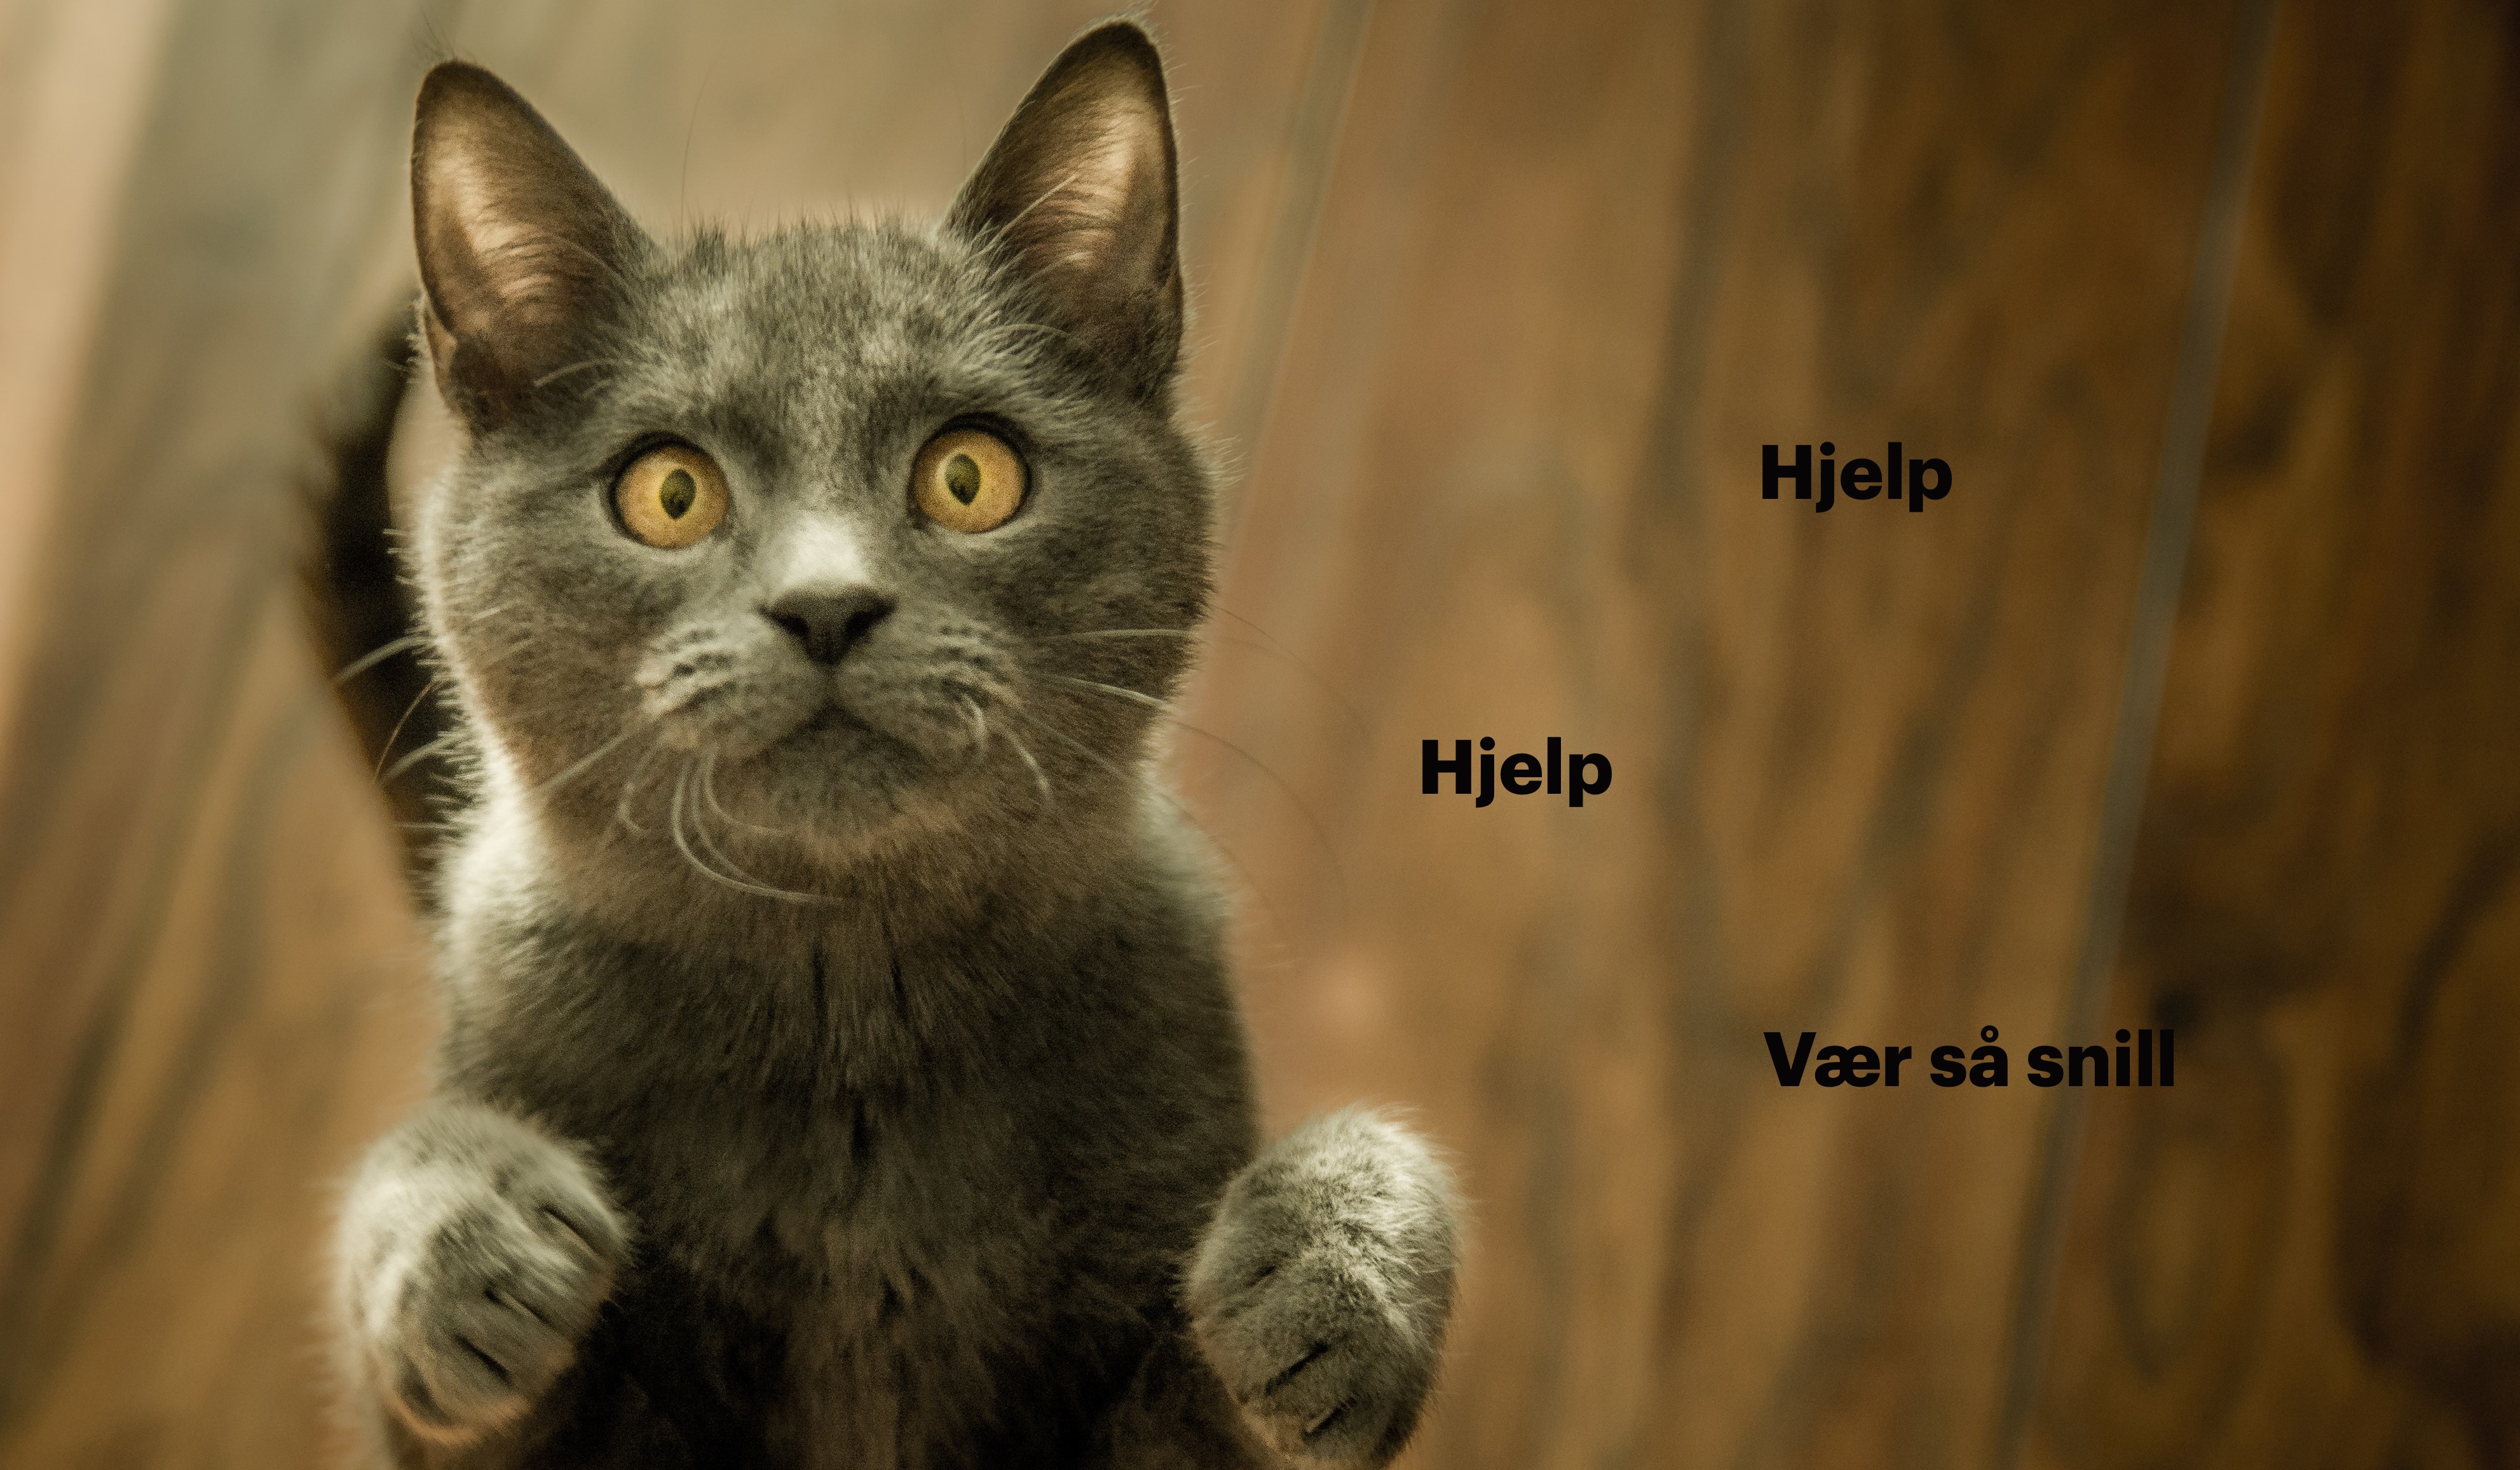 Bilde av en katt som ser fortvilet ut. På bildet står det: Hjelp, hjelp - vær så snill!